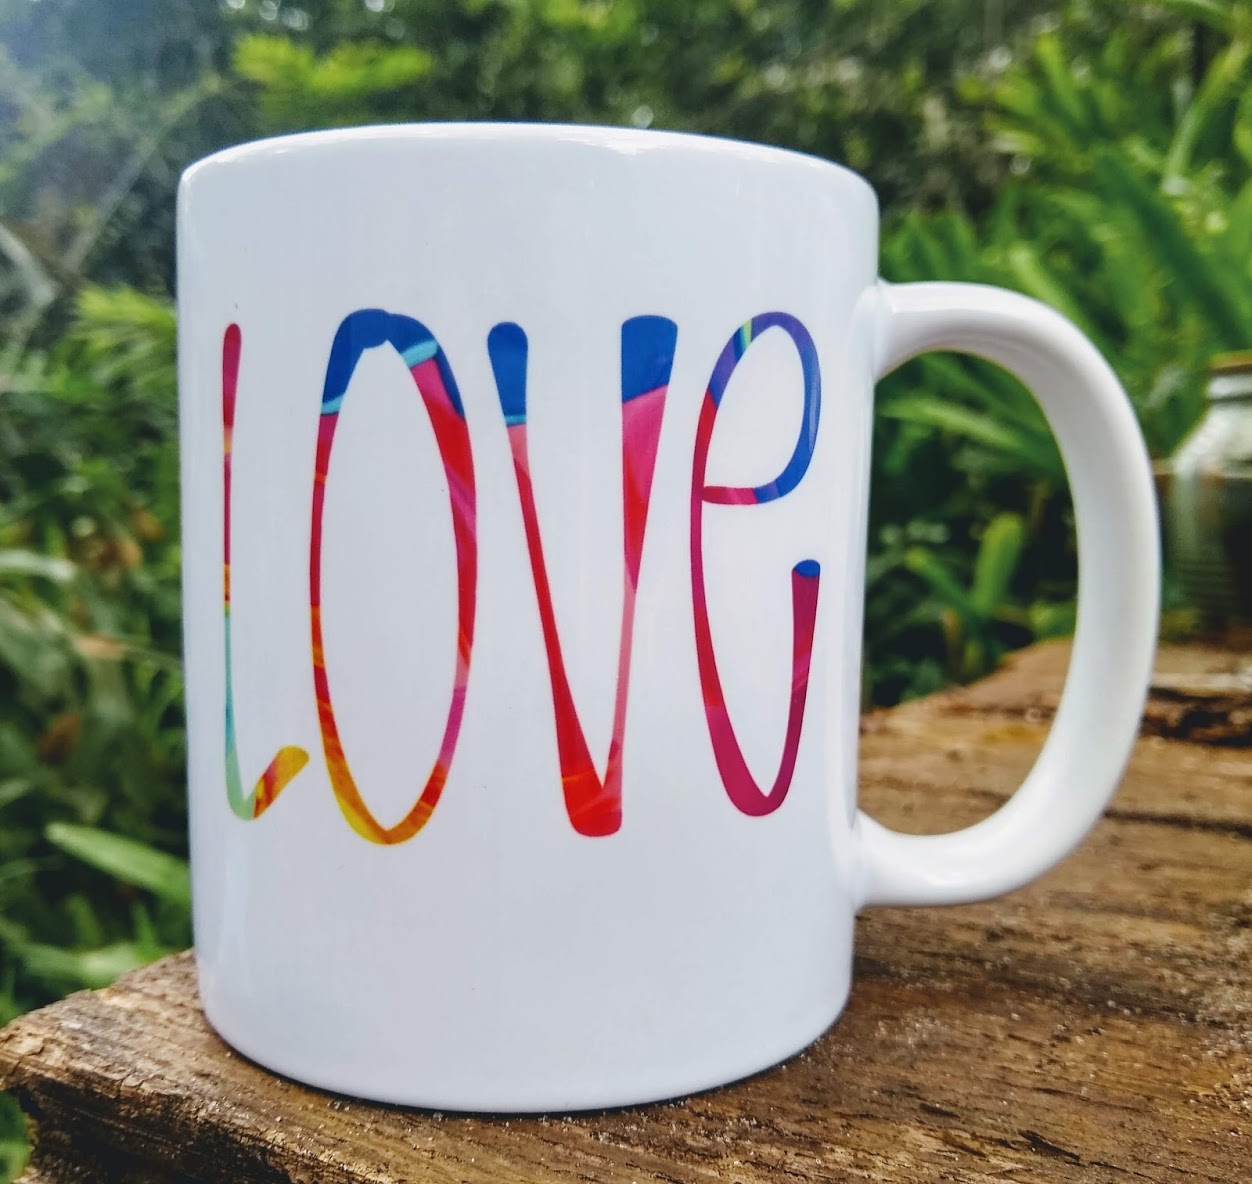 Love is love mug